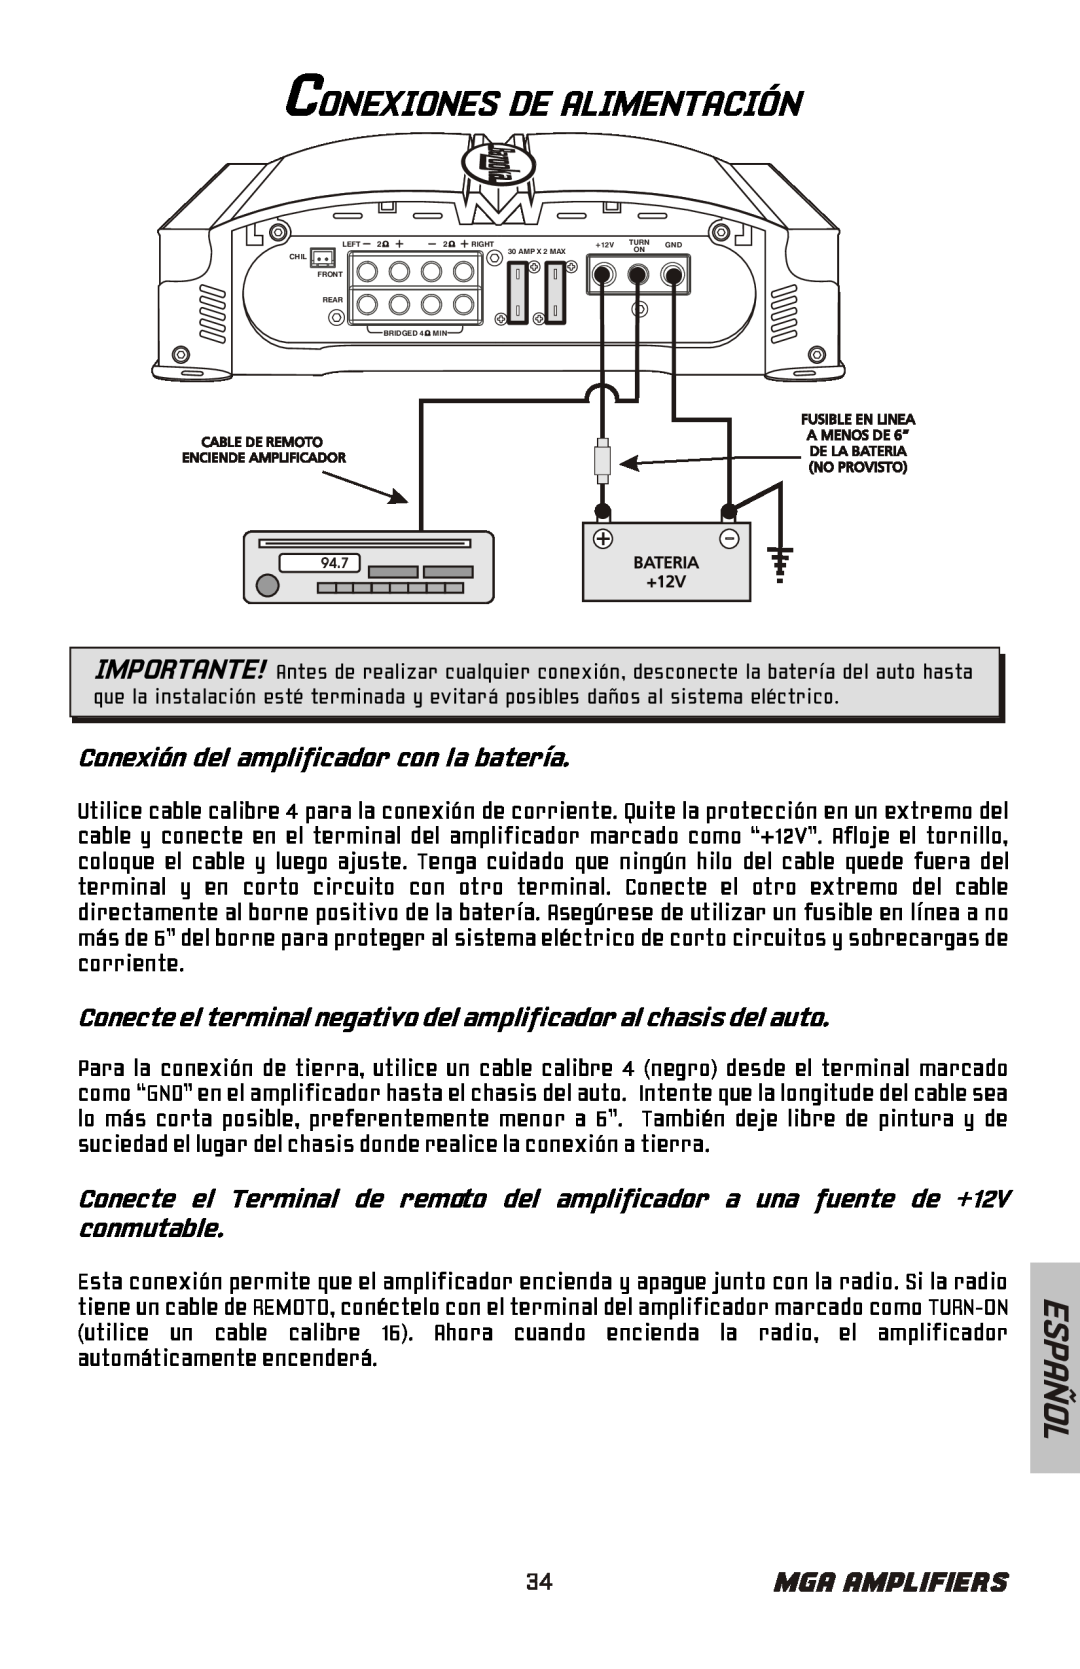 Bazooka MGA4150 manual Conexiones De Alimentación, Conexión del amplificador con la batería, Español, Mga Amplifiers 